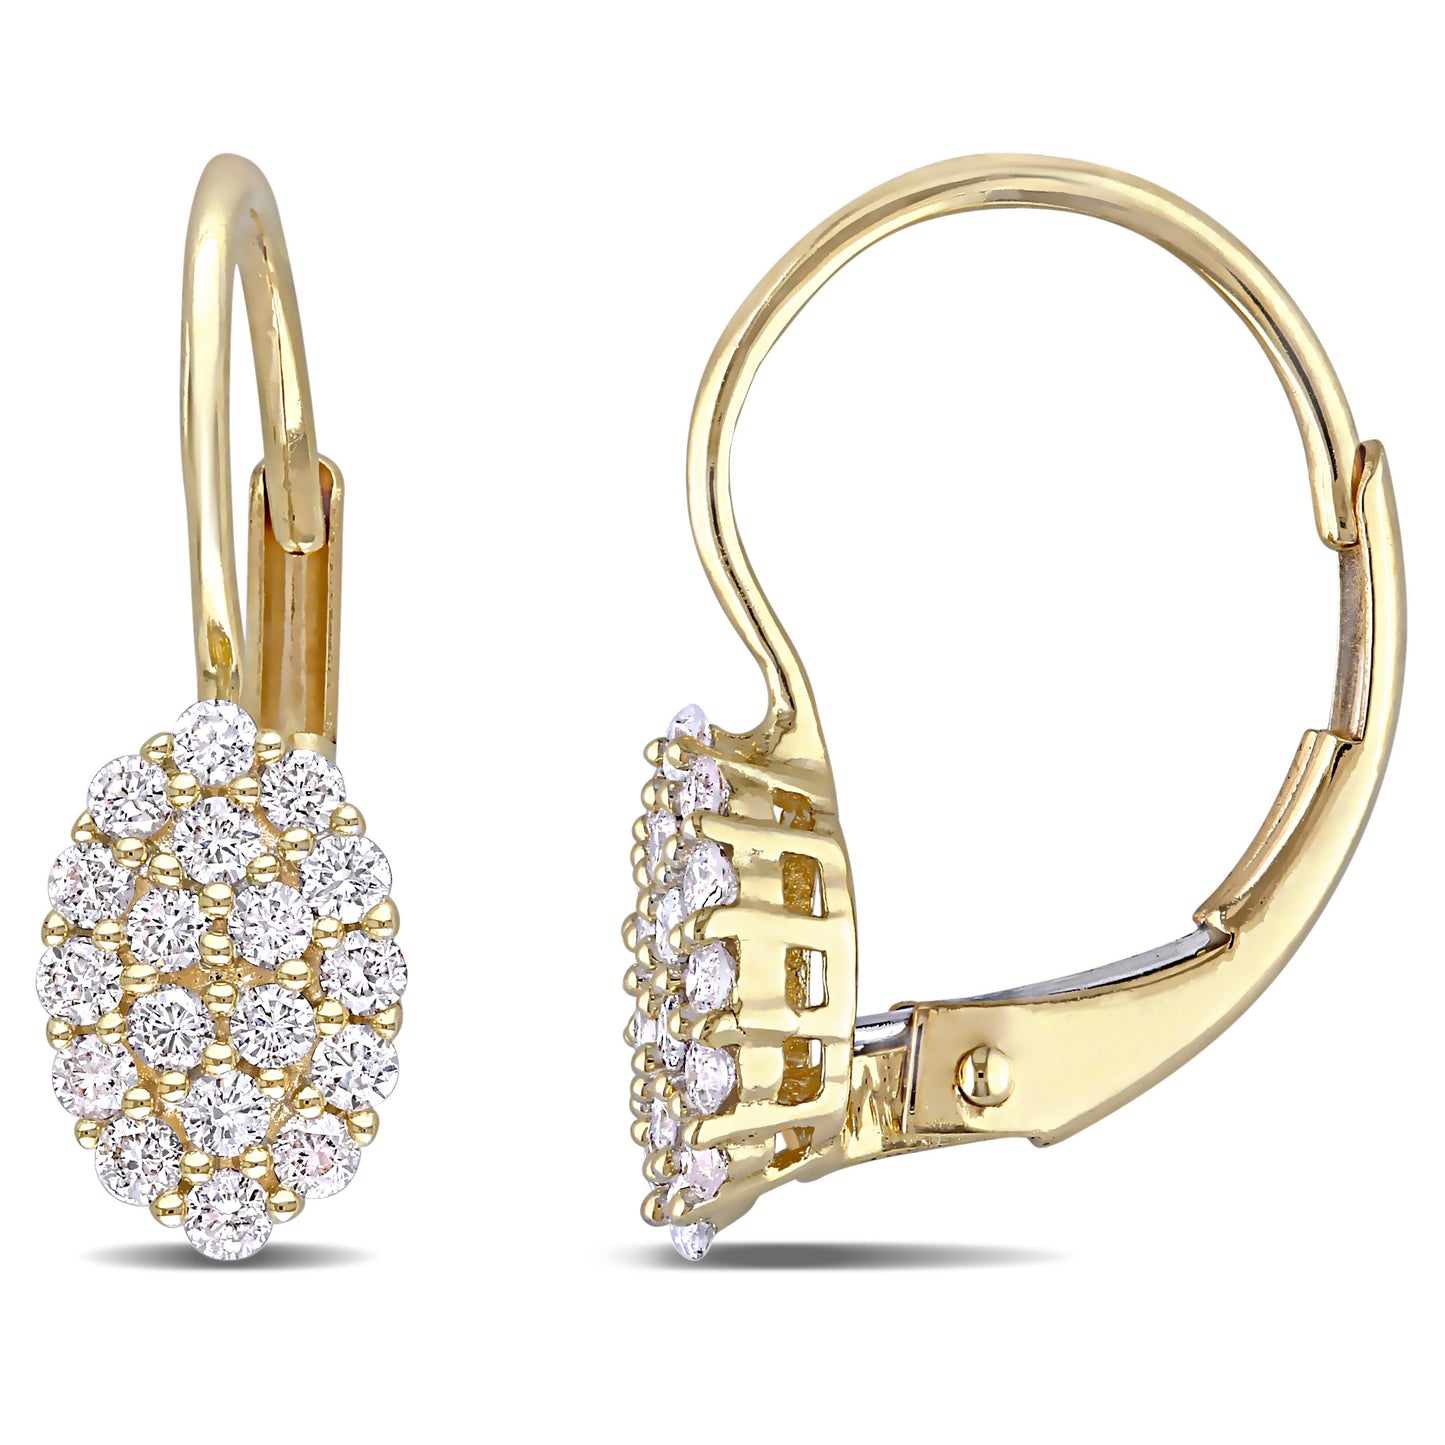 Cluster Oval Diamond Earrings in 14k Yellow Gold